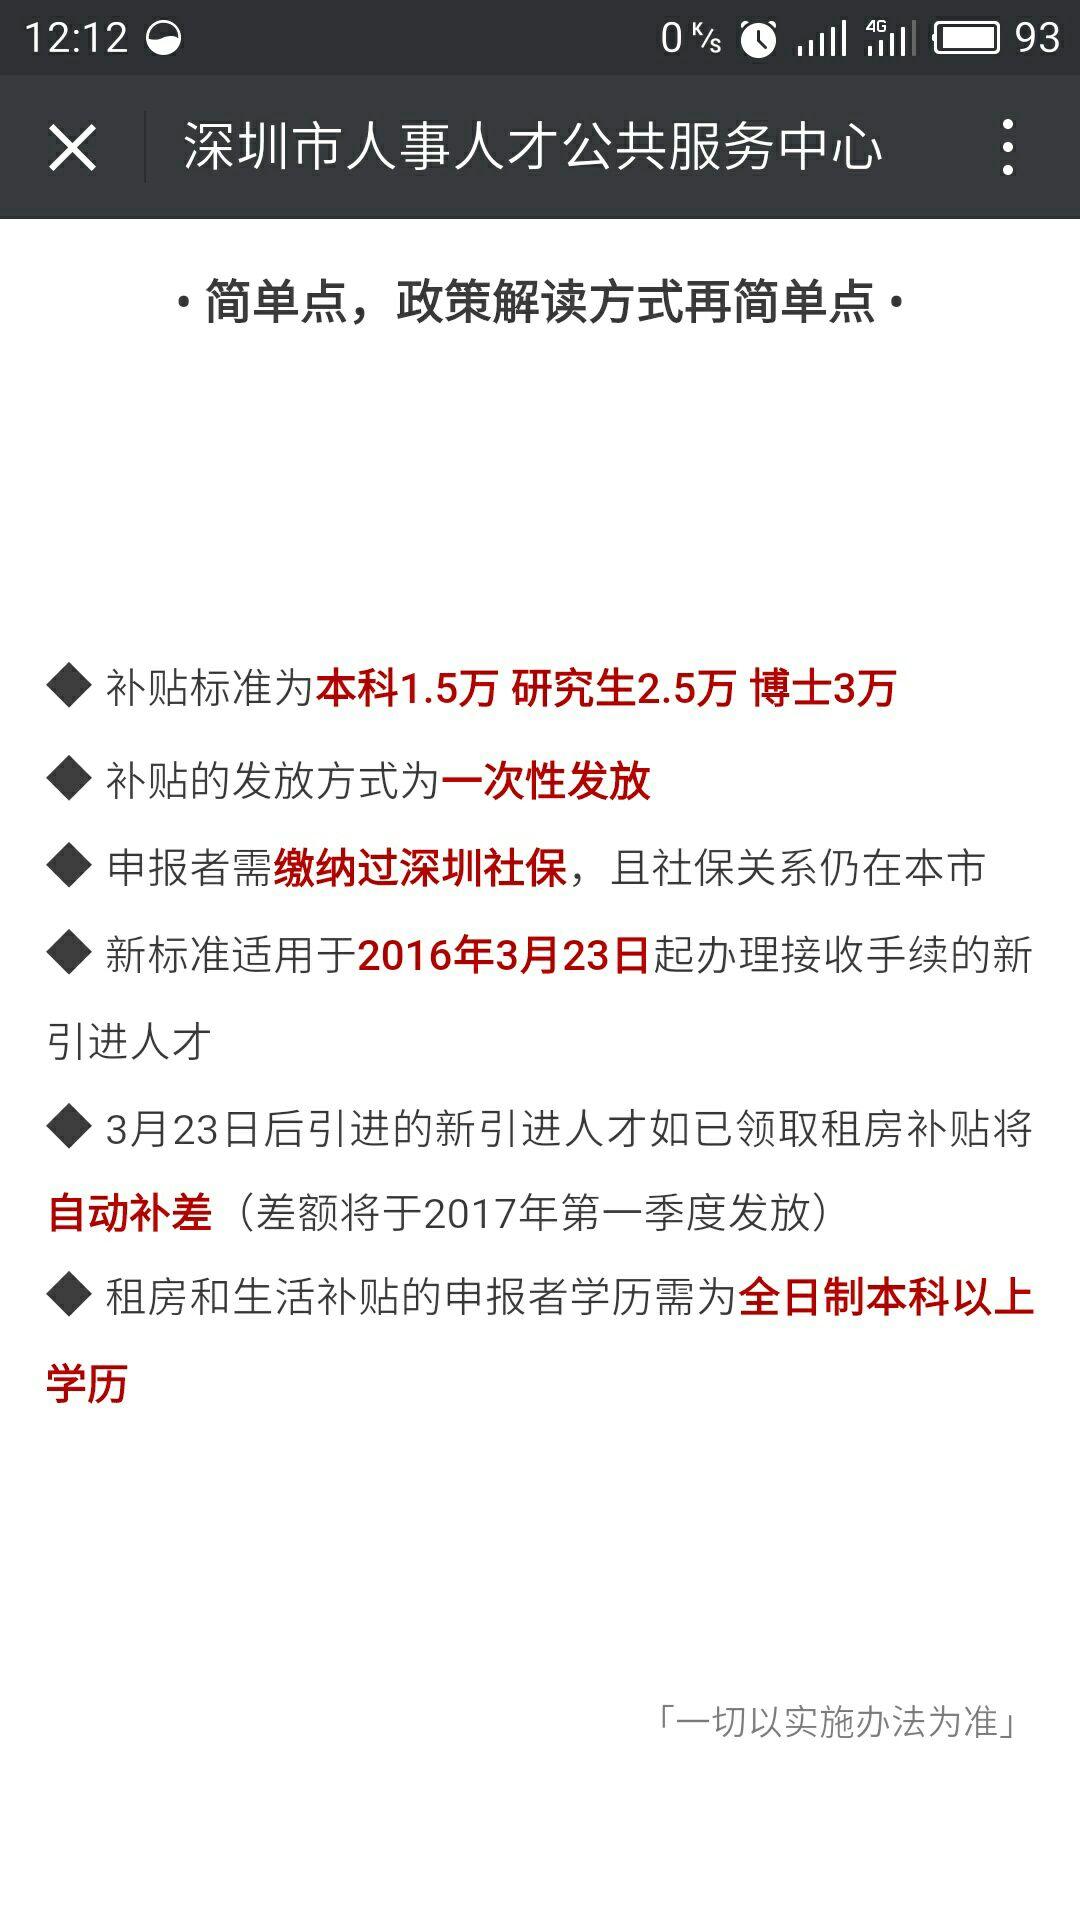 如何看待2016年12月1日深圳市新实行的人才(